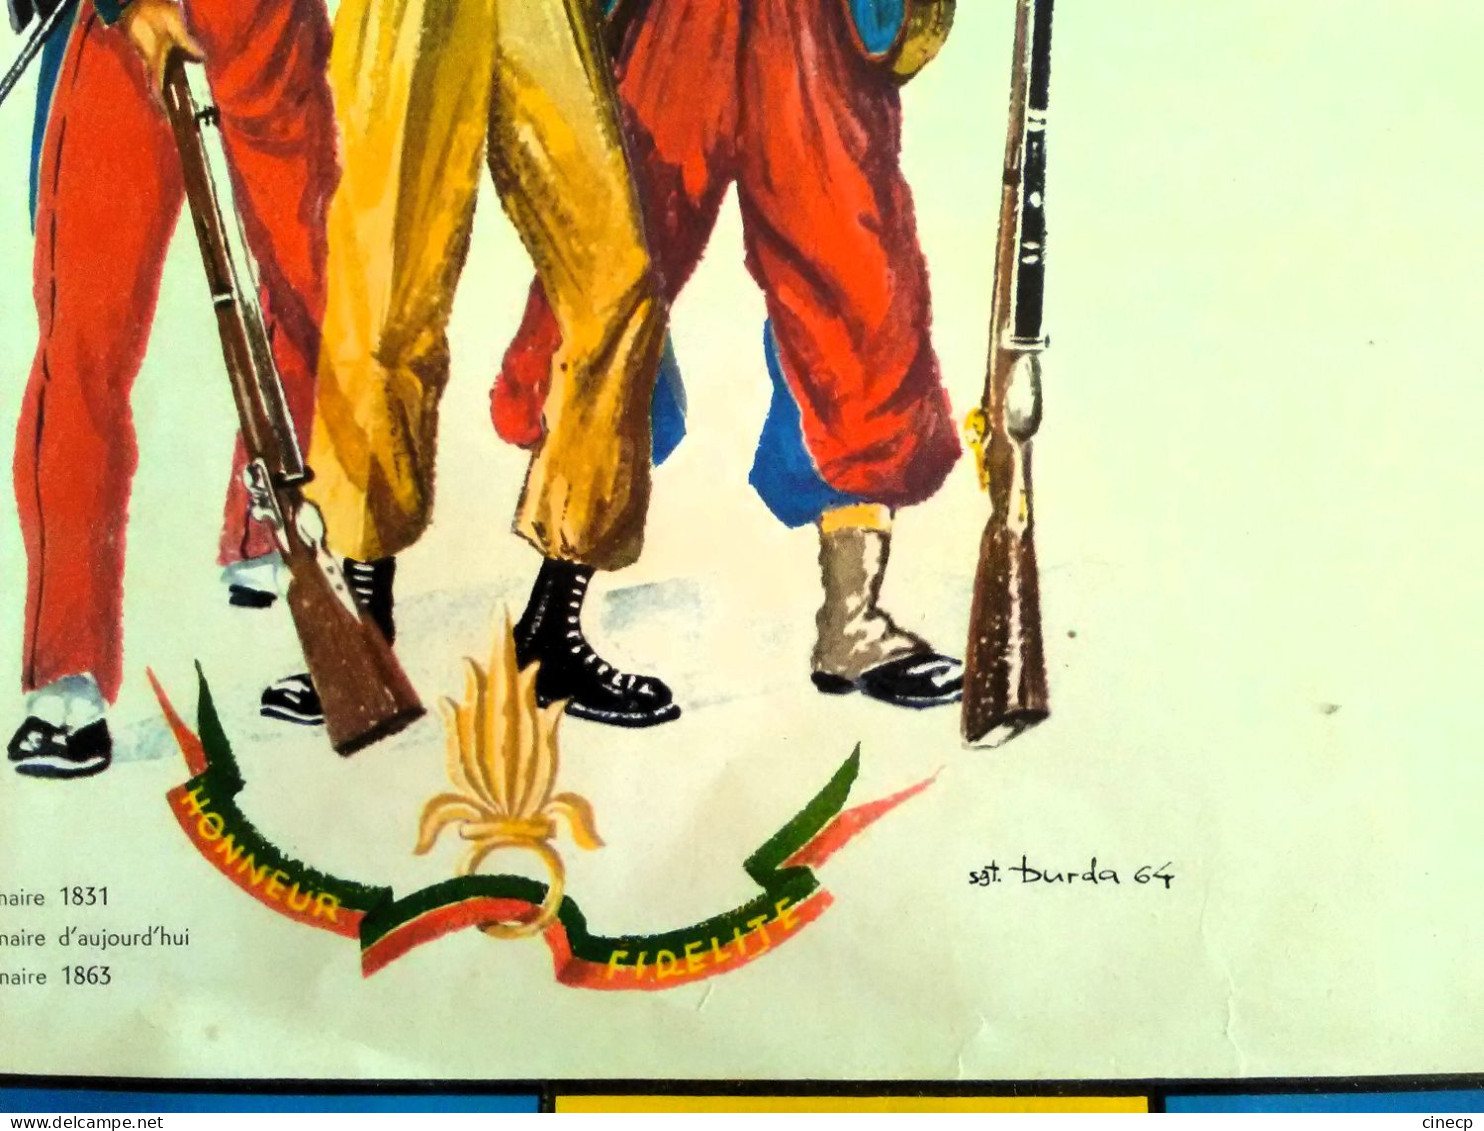 Superbe AFFICHE Calendrier Ancien Militaire De La Légion étrangère 1965 Illustrateur Burda éditions Képi Blanc Soldat - Groot Formaat: 1961-70